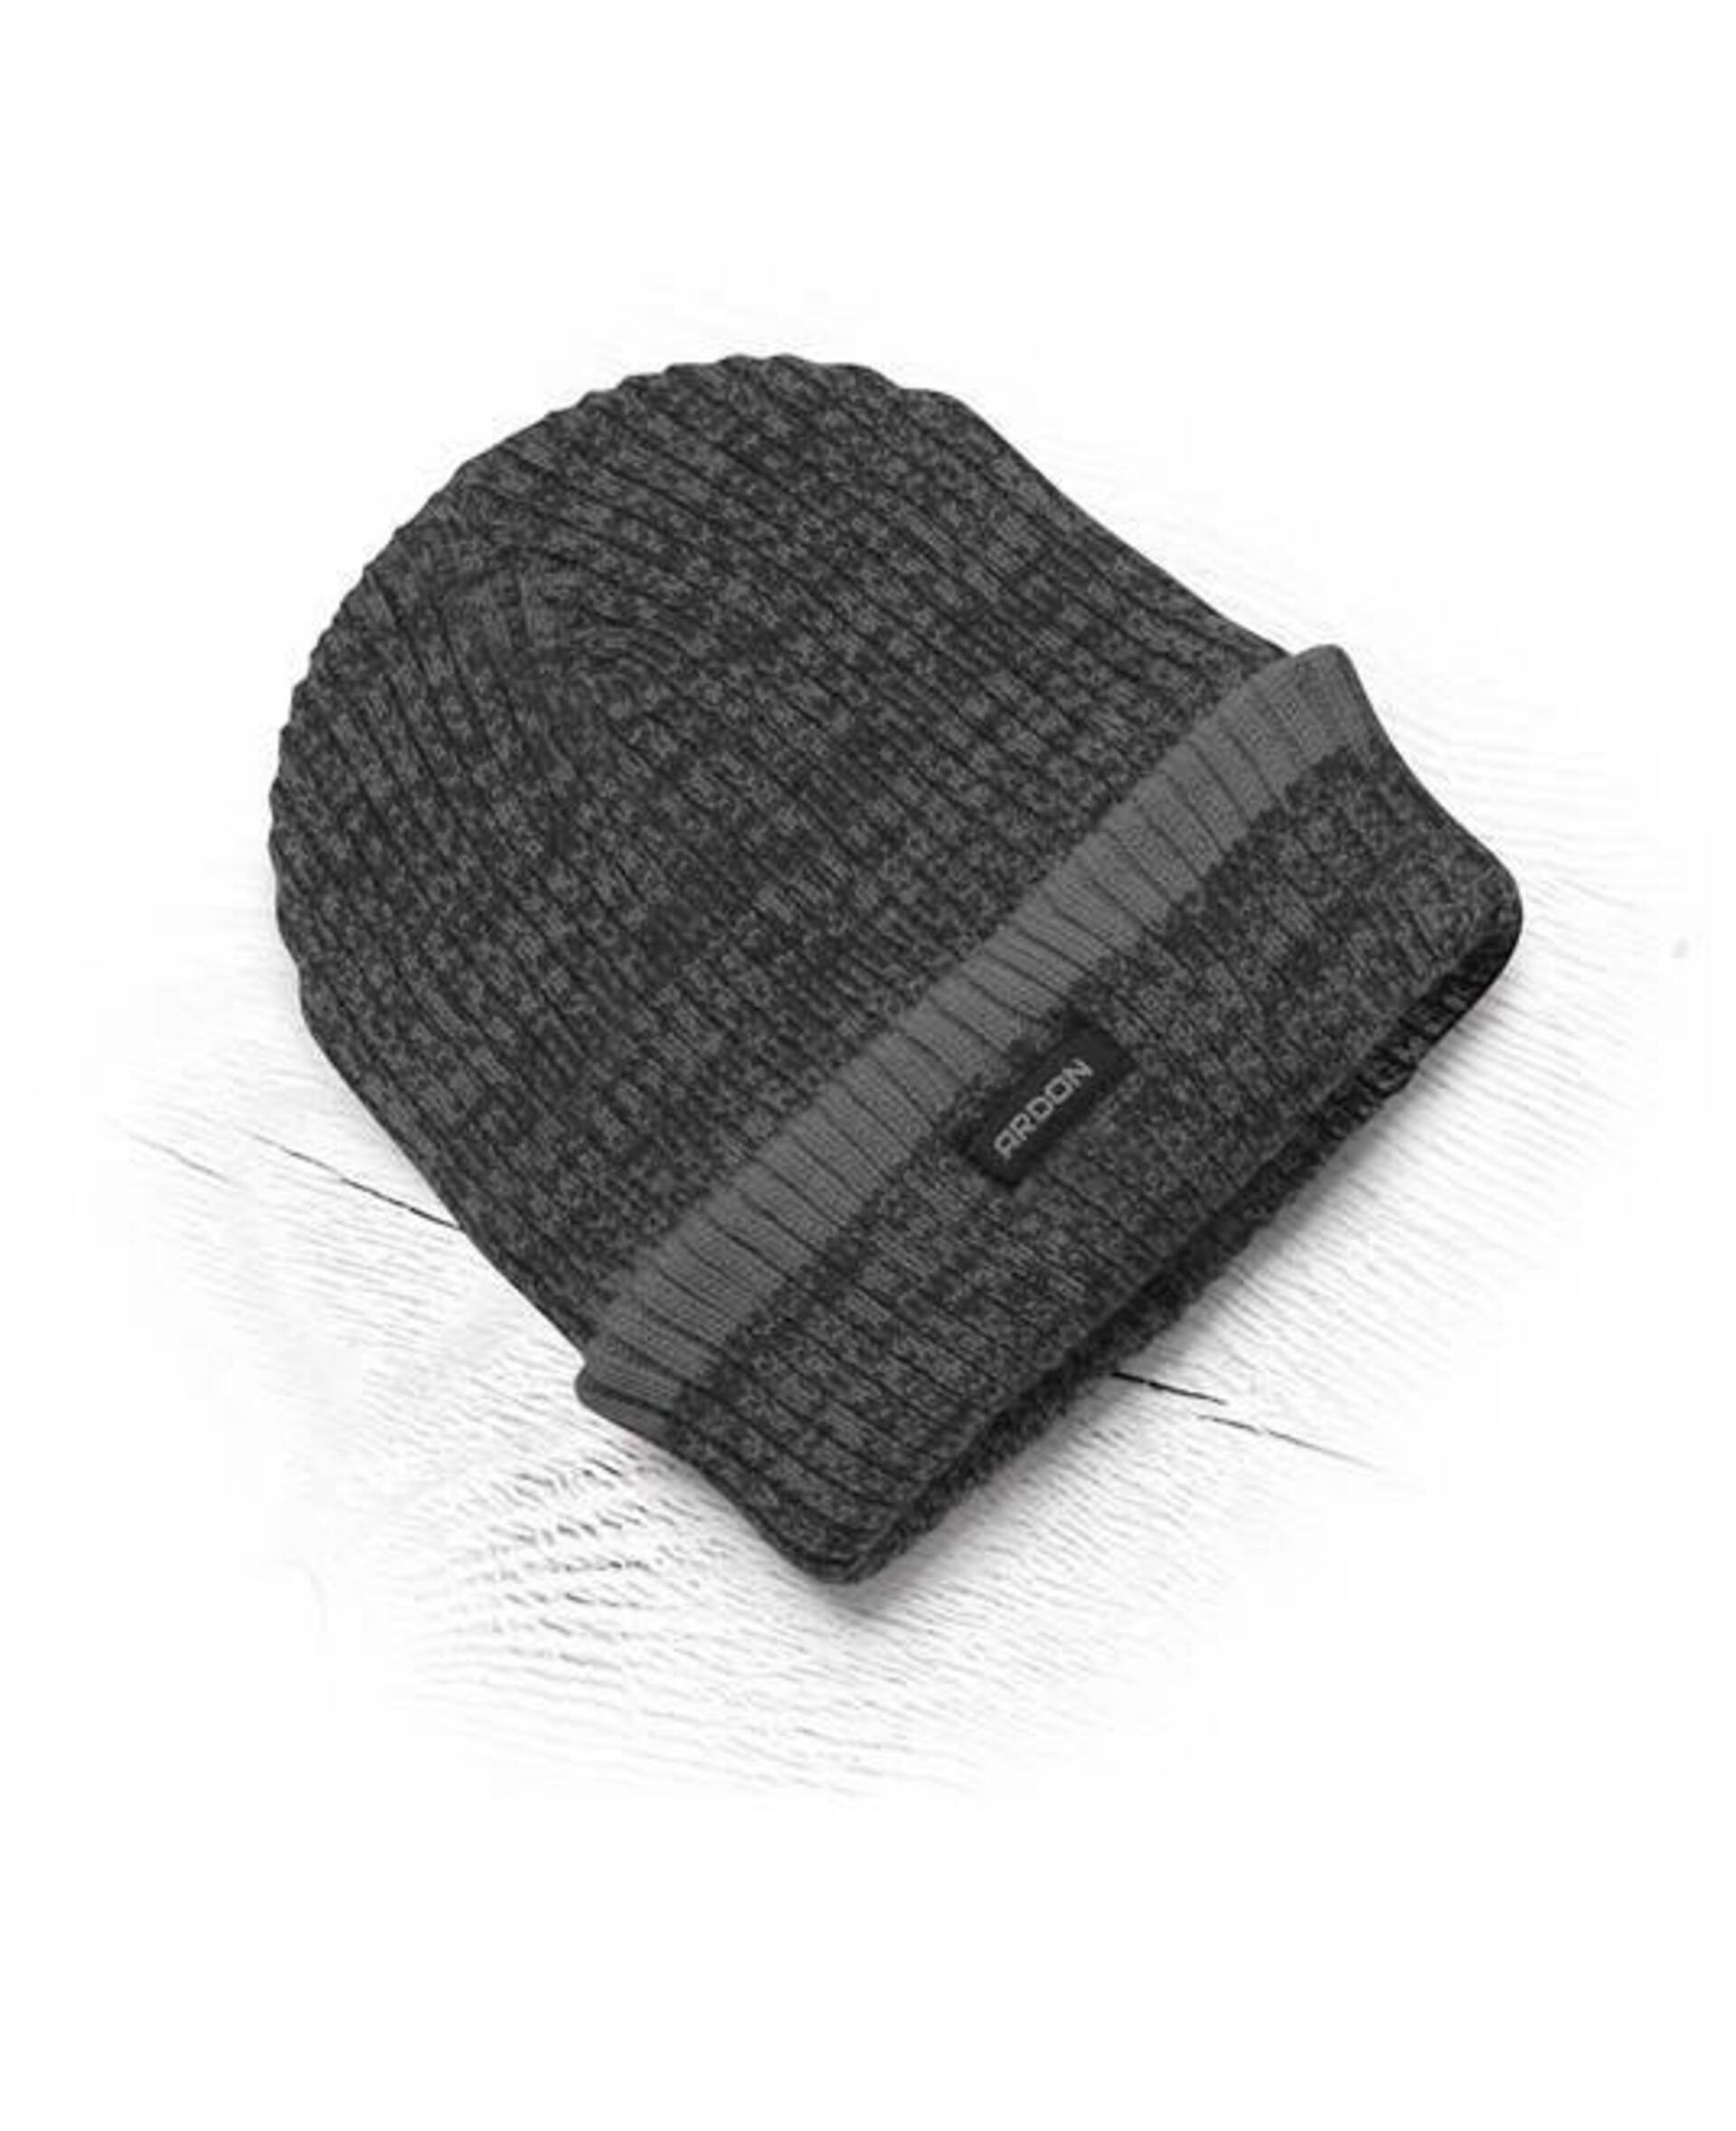 Ardon VISION NEO pletená Čepice zimní černá/šedá + Bezplatné vrácení zboží